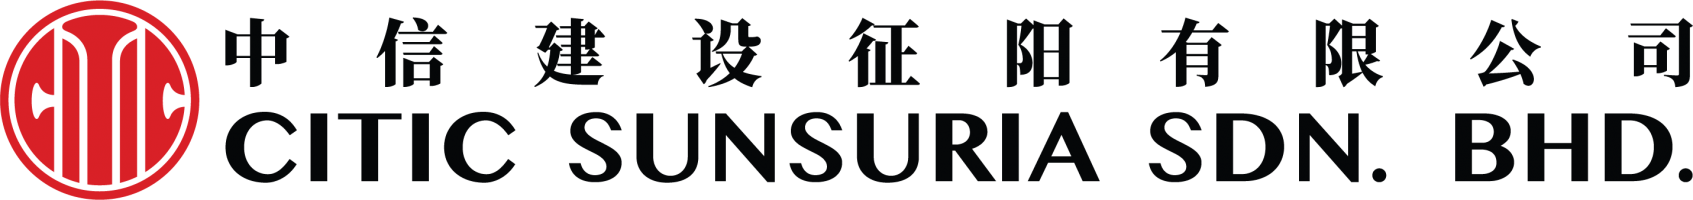 Citic Sunsuria Sdn Bhd company logo